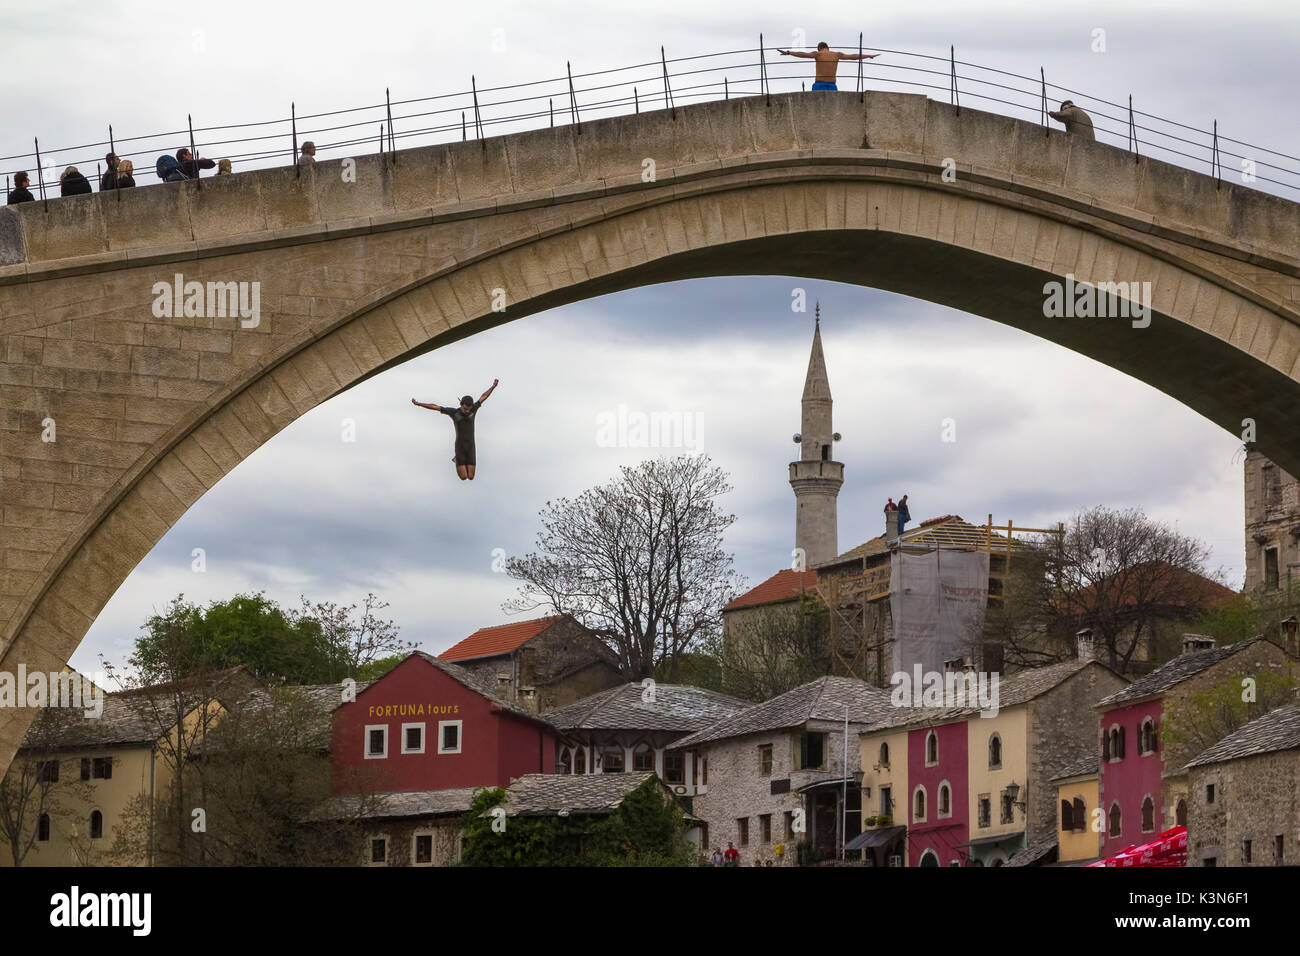 L'Europe orientale, Mostar, Bosnie-Herzégovine. Le célèbre saut dans la rivière d'Naretva le Stari Most (Vieux Pont) Banque D'Images